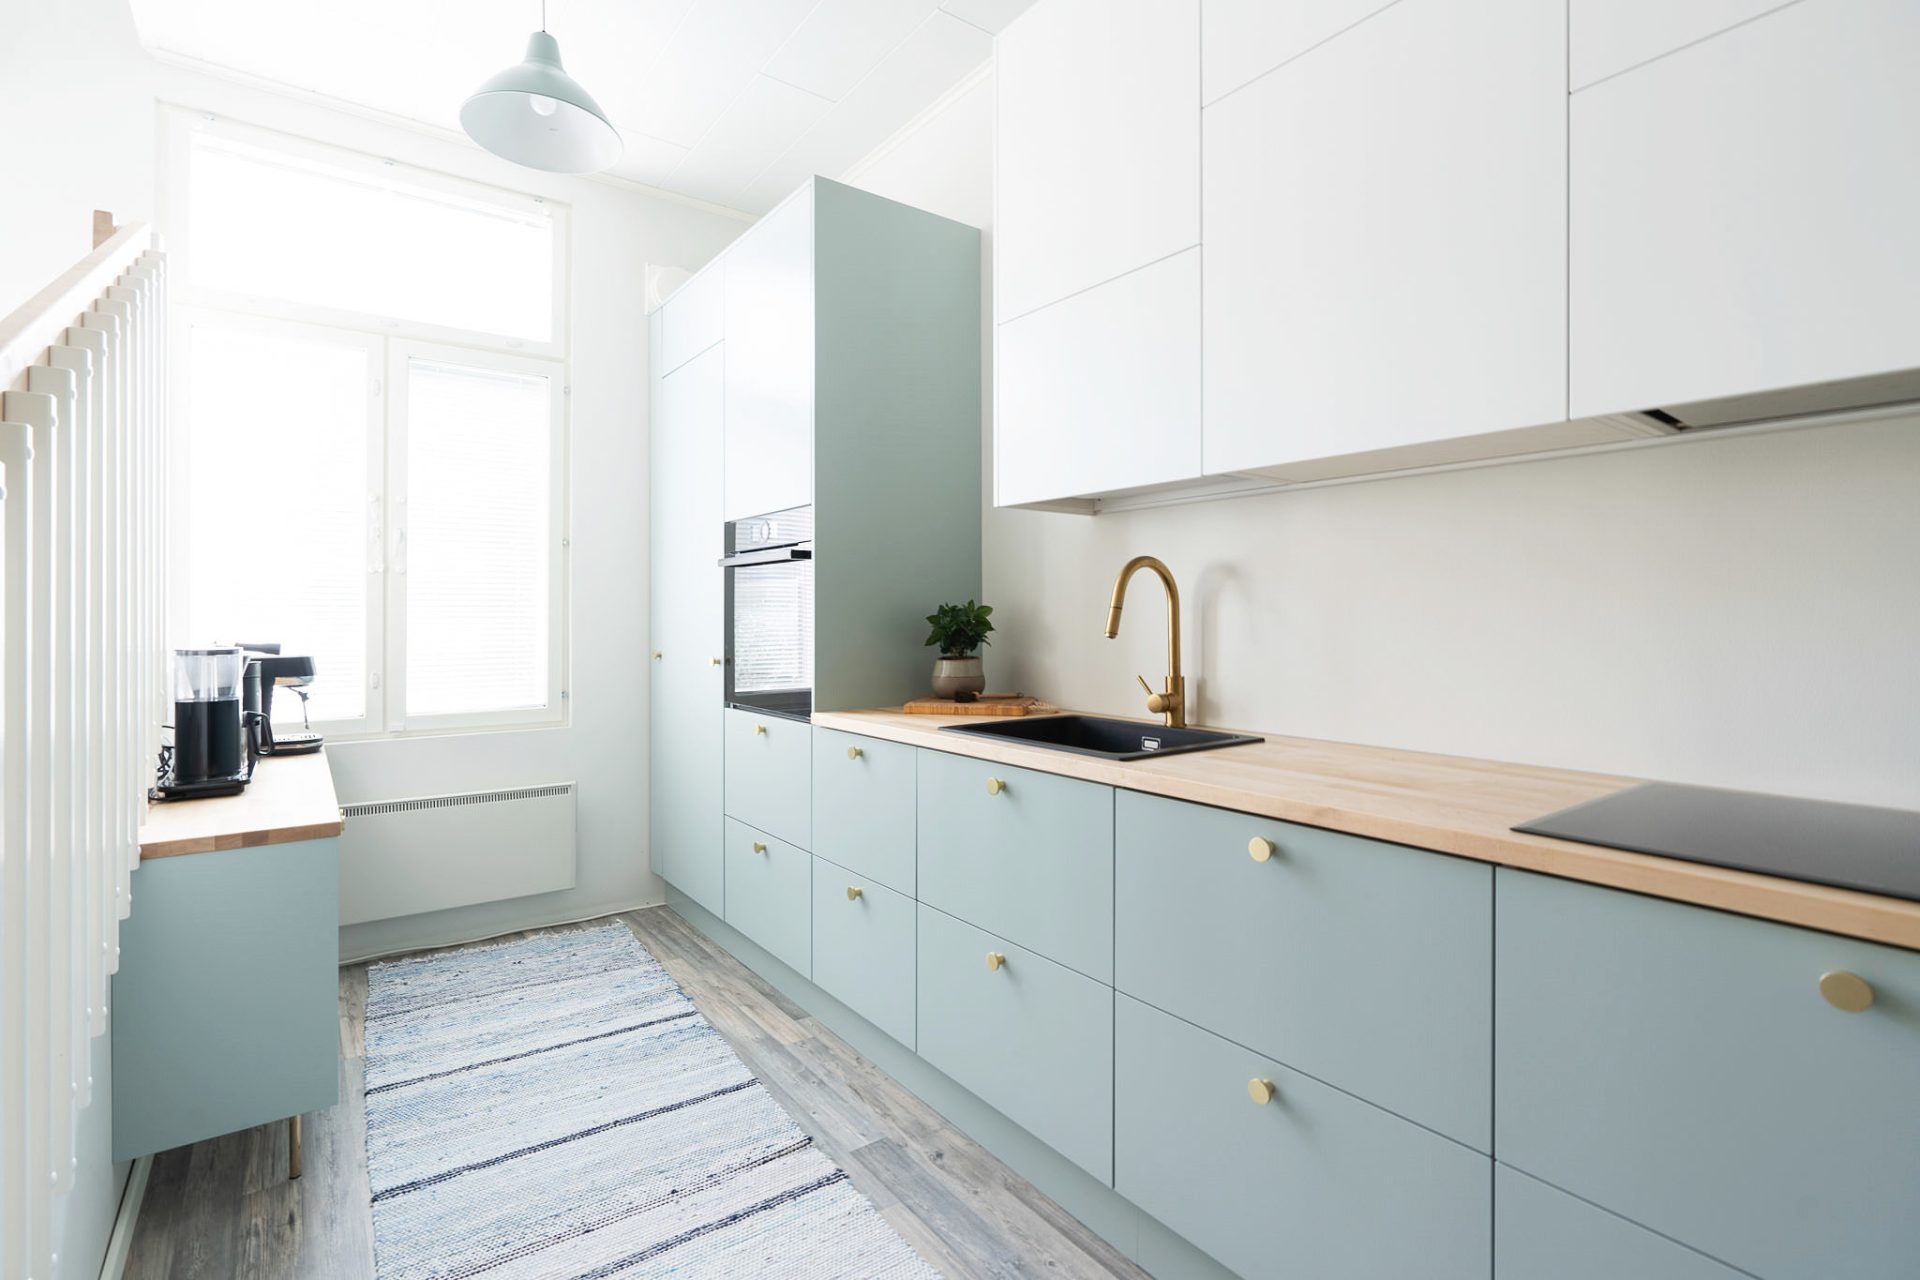 Vanhassa portsalaisasunnossa on Unique Home -remontin jälkeen kaksivärinen keittiökokonaisuus sileillä ovilla ja messinkisillä yksityiskohdilla. Yläkaapistot ovat valkoiset ja alakaapistot sekä korkeat komerot Opaali-sävyiset.